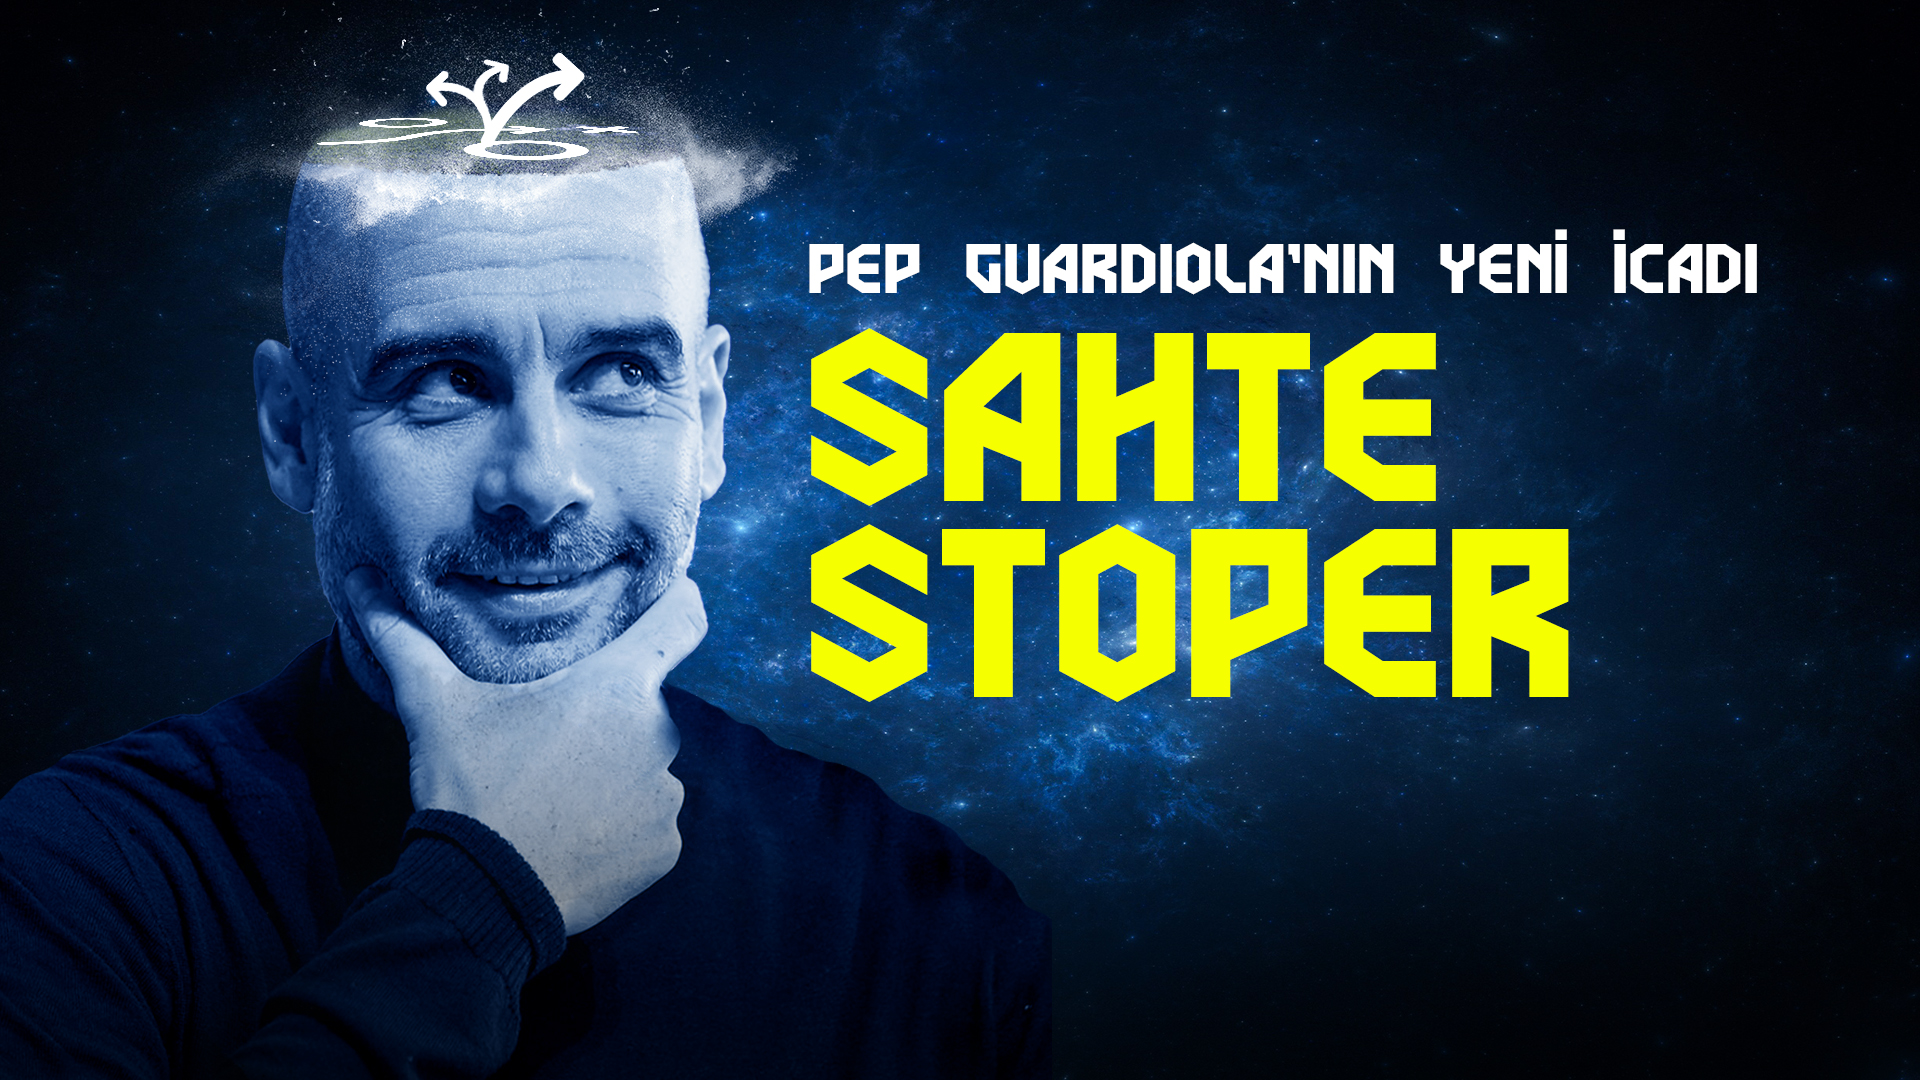 Pep Guardiola’nın Yeni İcadı: “Sahte Stoper” & Manchester City’nin Yeni Kurgusu